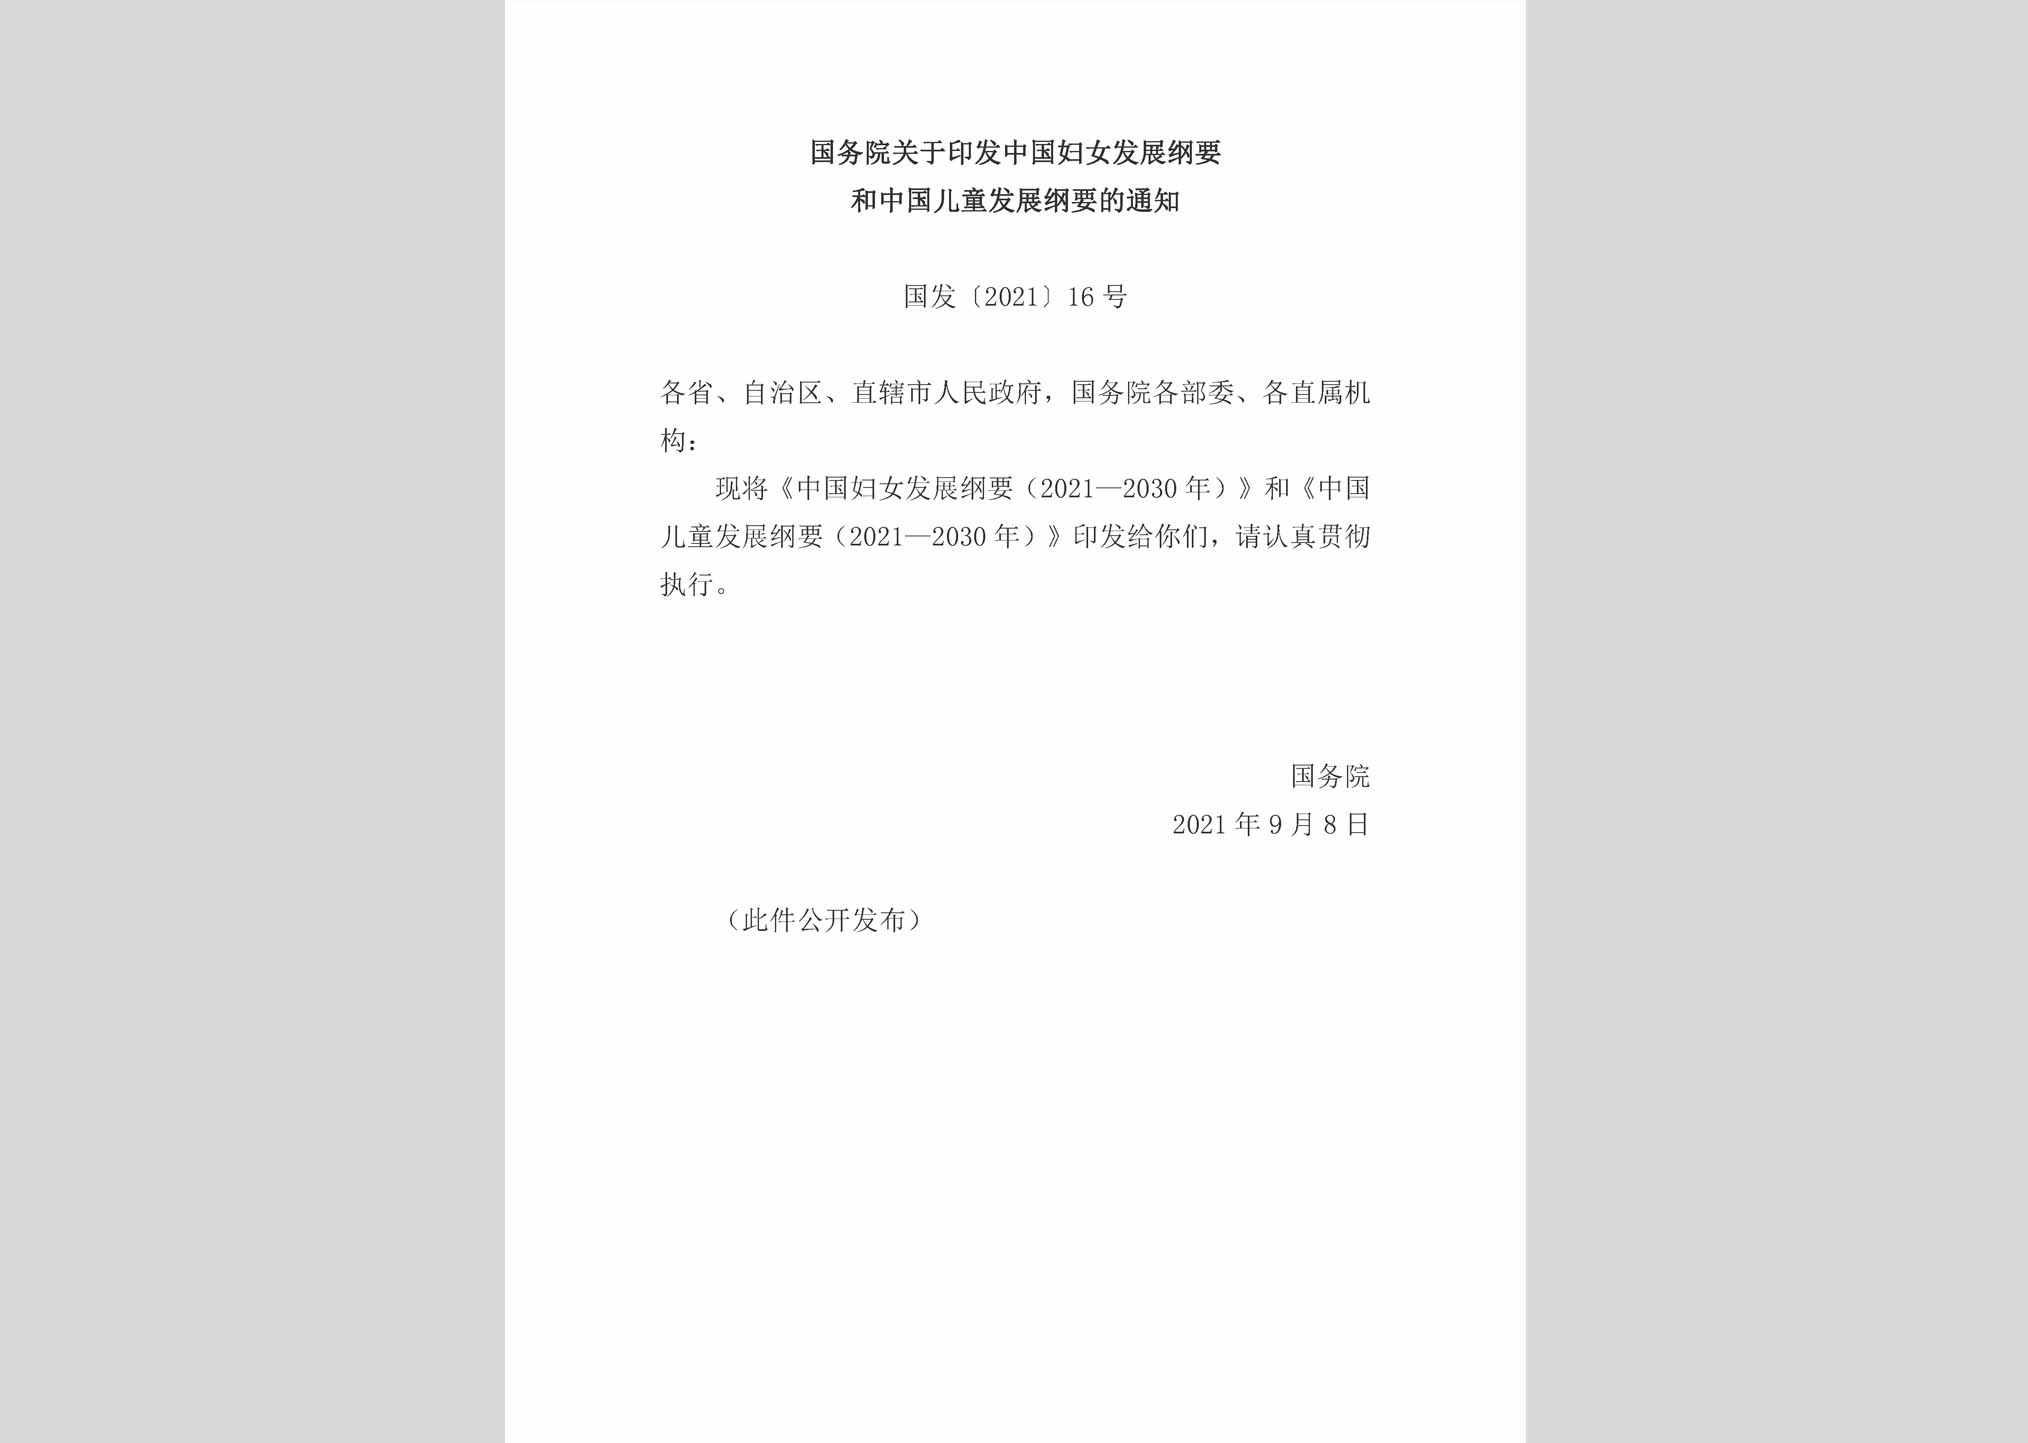 国发[2021]16号：国务院关于印发中国妇女发展纲要和中国儿童发展纲要的通知